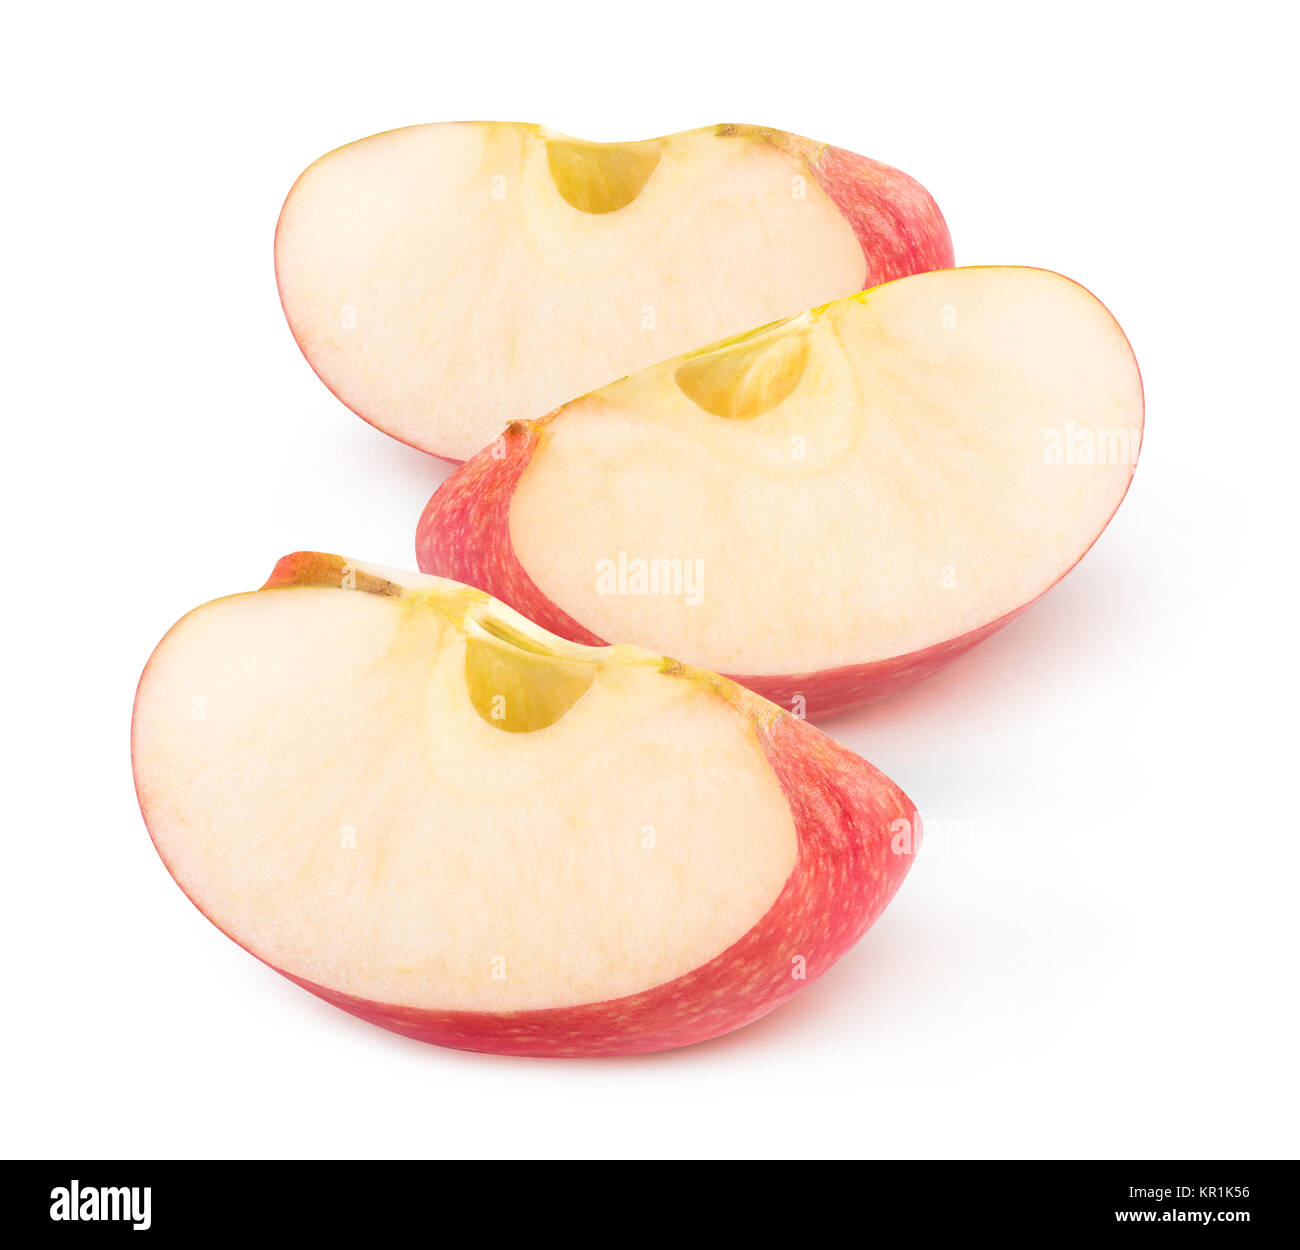 Isolierte apple Keile. Drei Stücke der roten Apfel Obst auf weißem Hintergrund mit Freistellungspfad isoliert Stockfoto